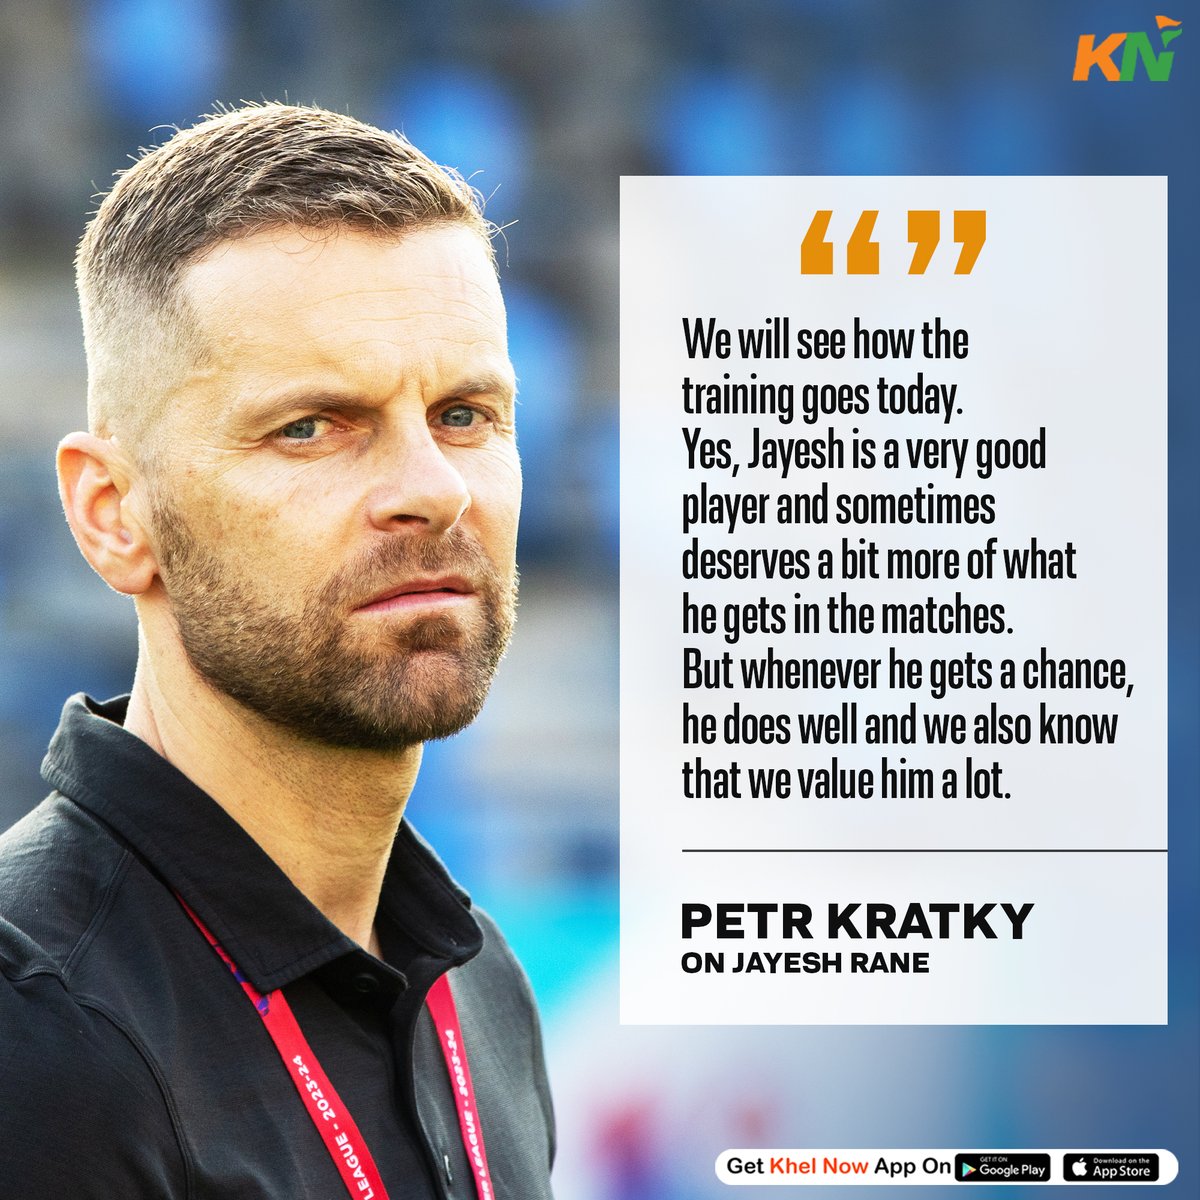 Petr Kratky on Jayesh Rane 👀🗣

#IndianFootball #LetsFootball #ISL #ISL10 #MumbaiCityFC #petrkratky